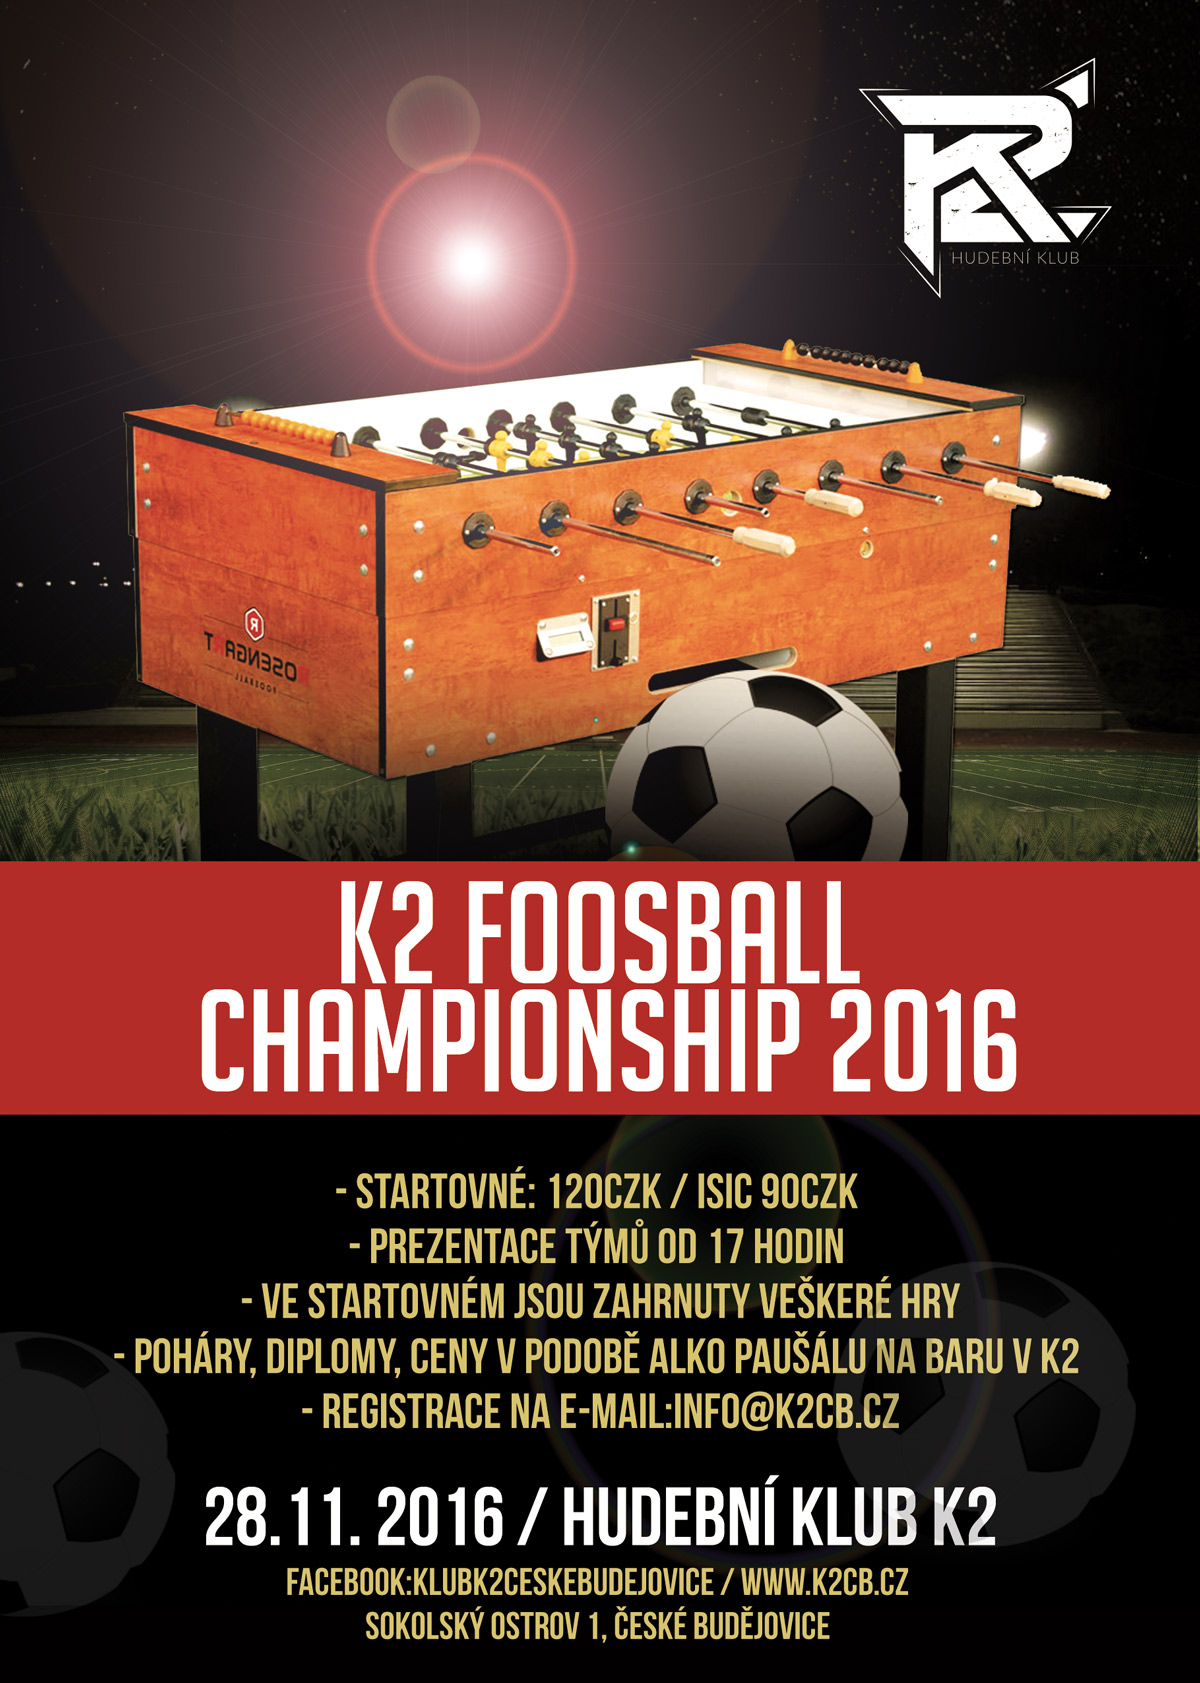 K2 foosball championship 2016